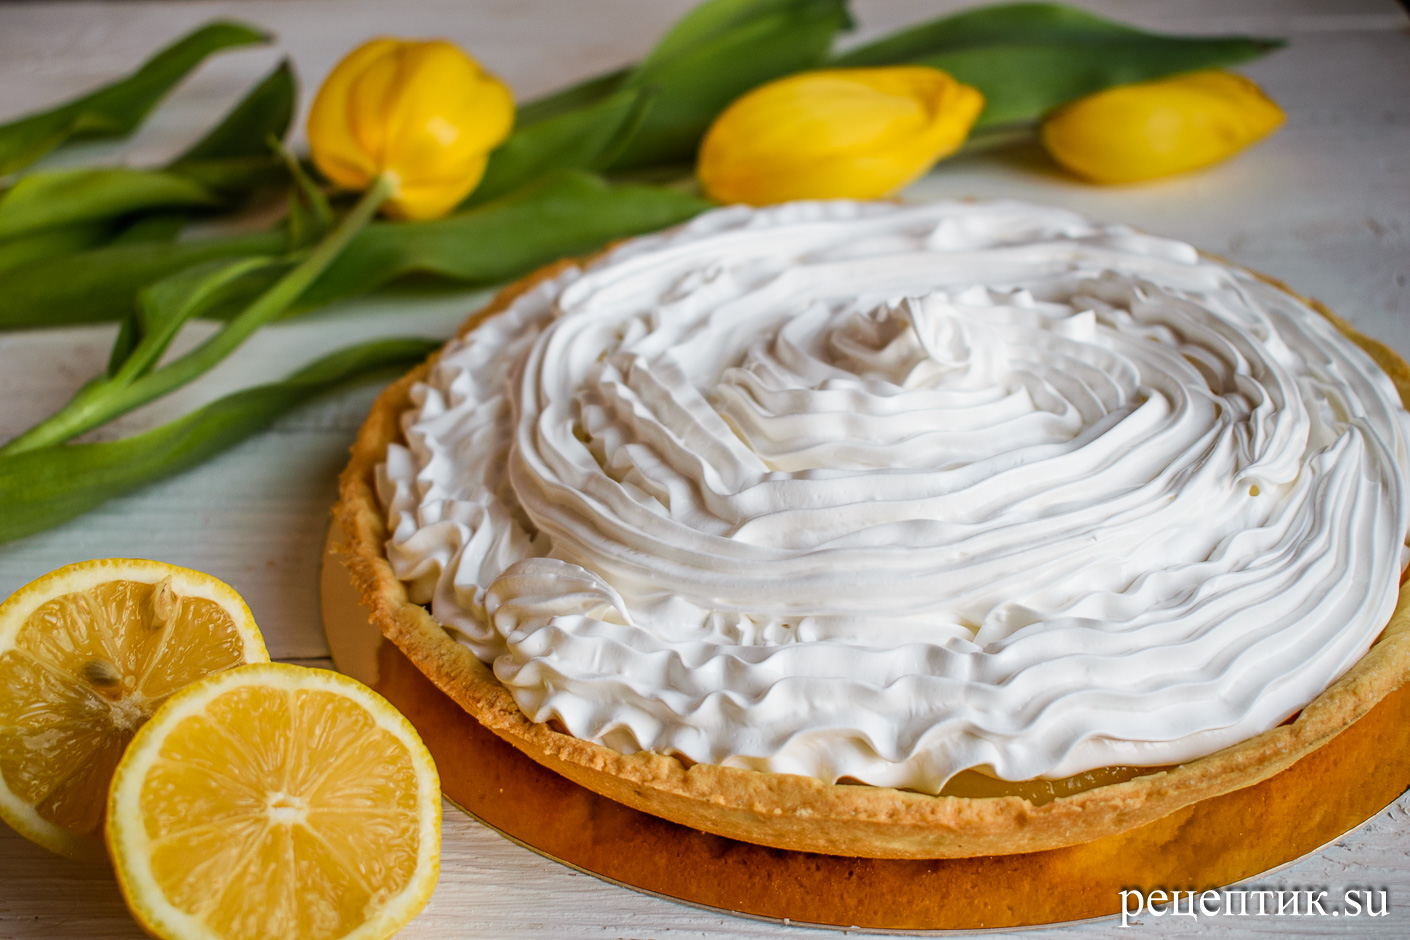 Нежный лимонный пирог с безе - рецепт с фото, результат